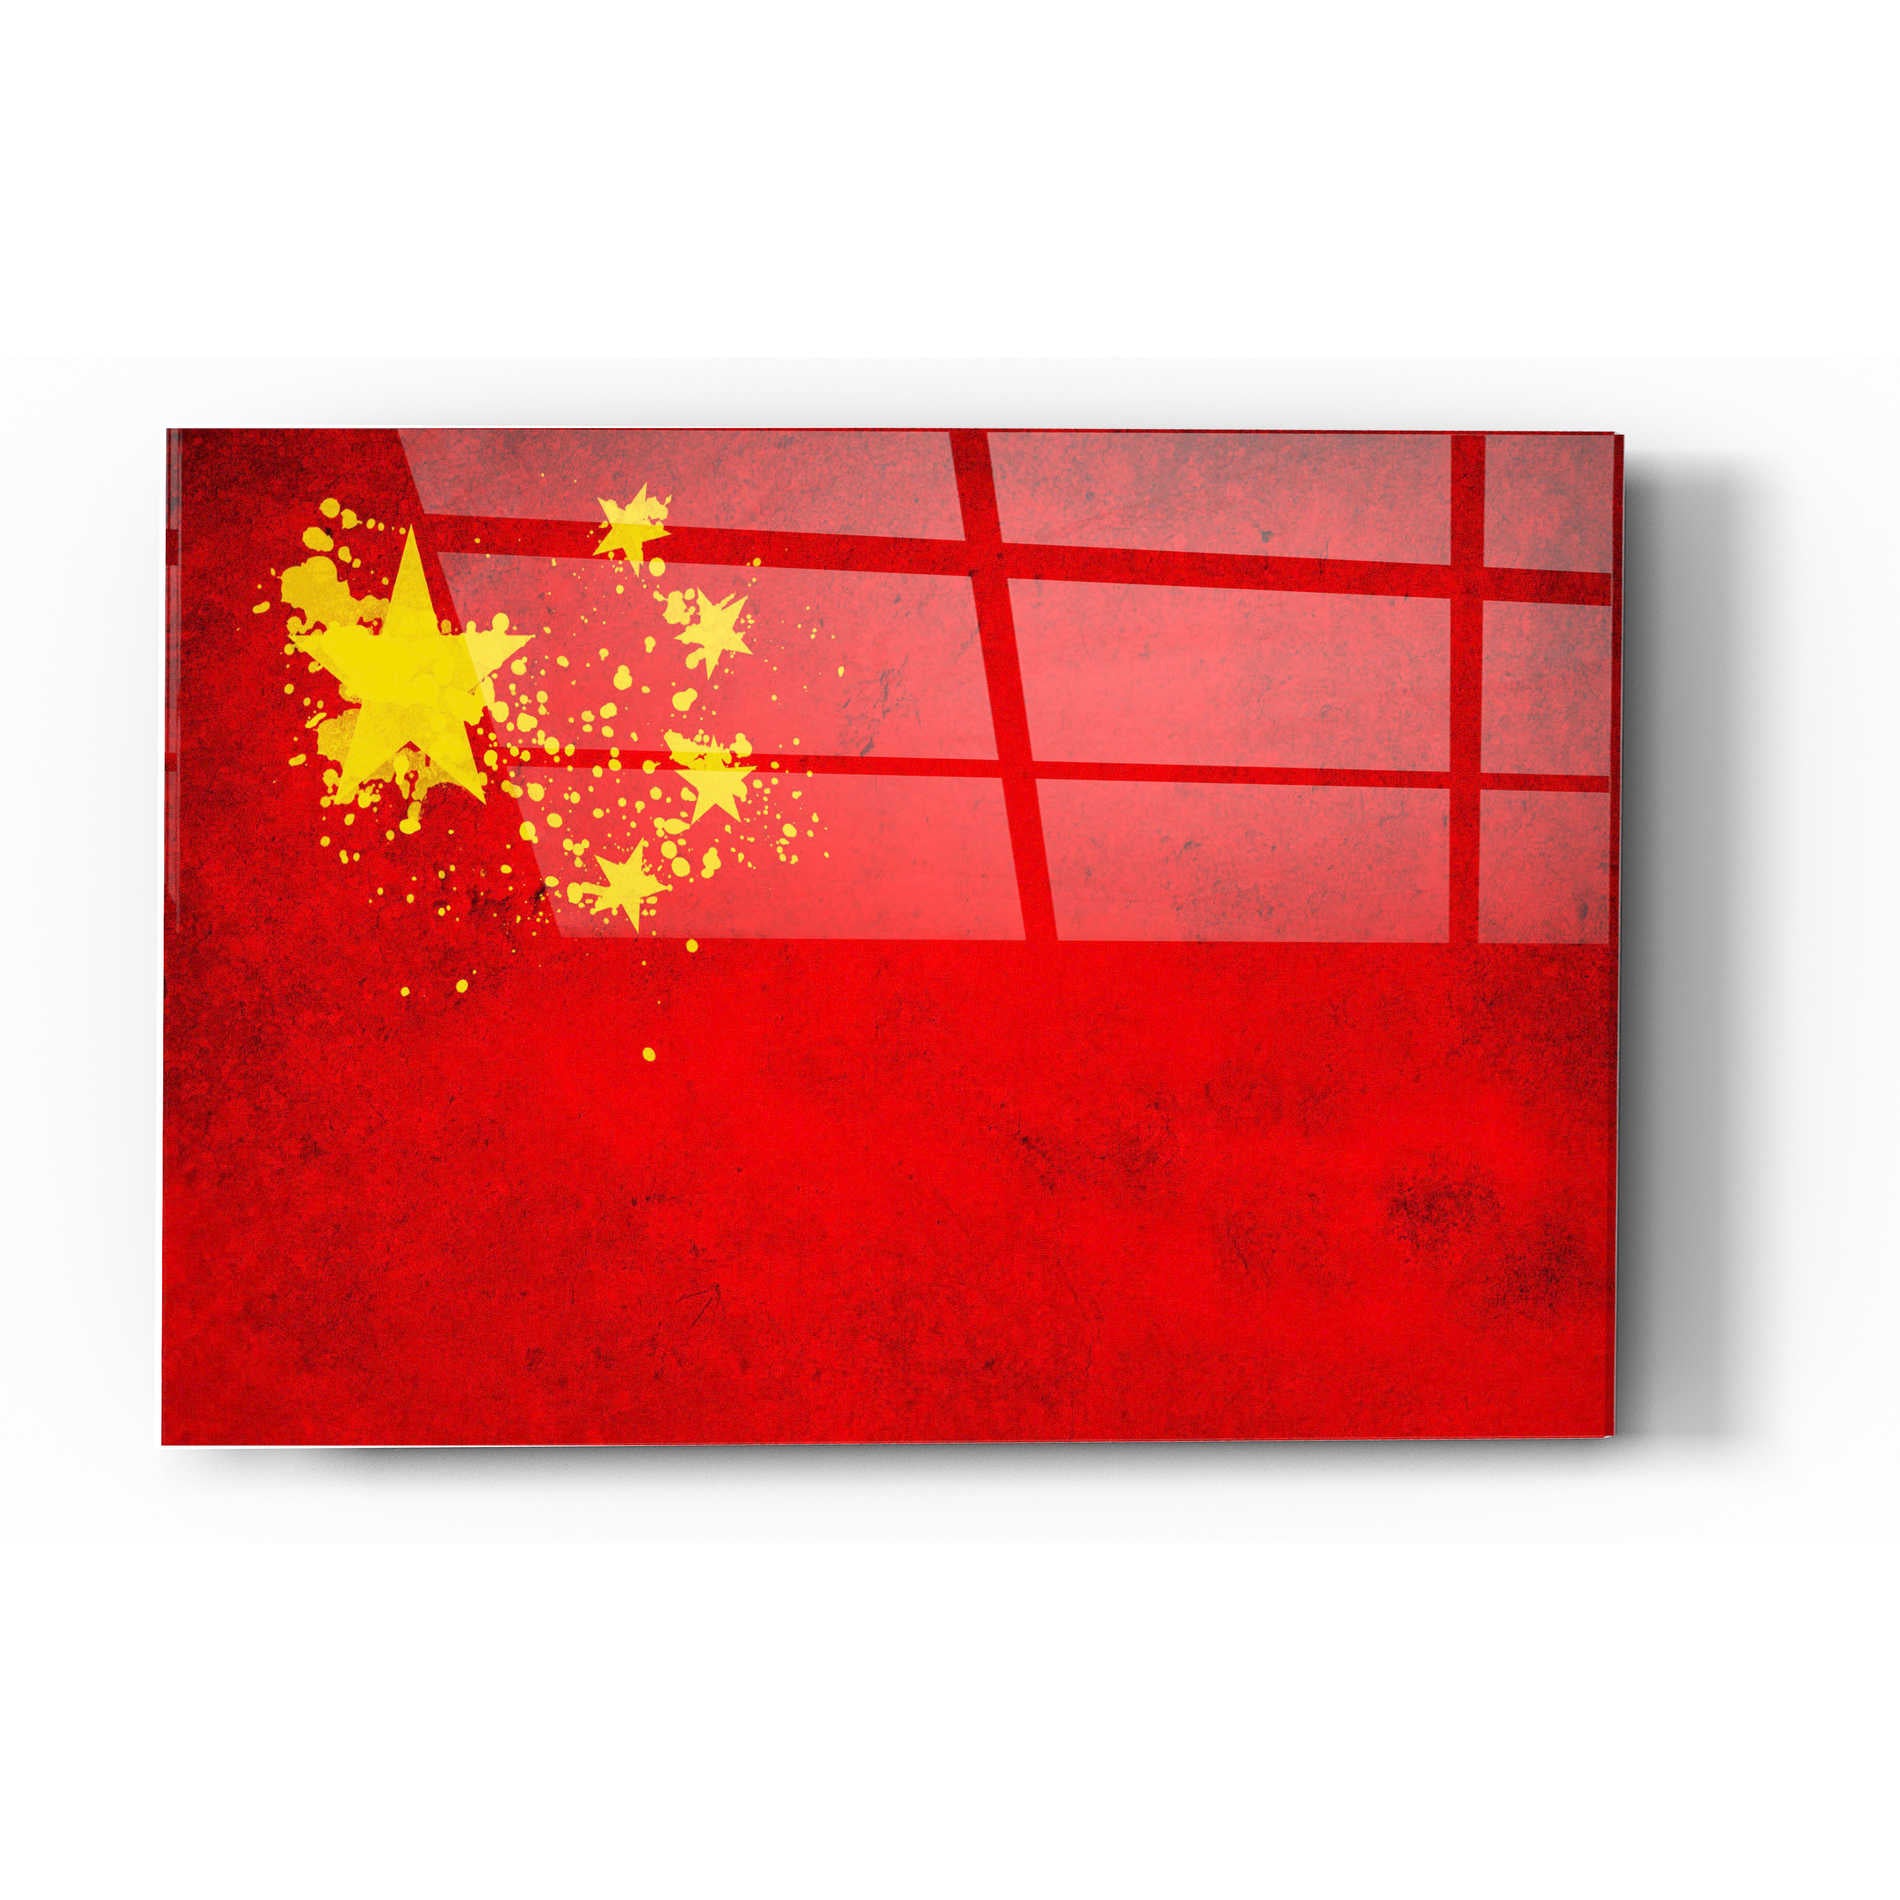 Epic Art "China" Acrylic Glass Wall Art,16x24